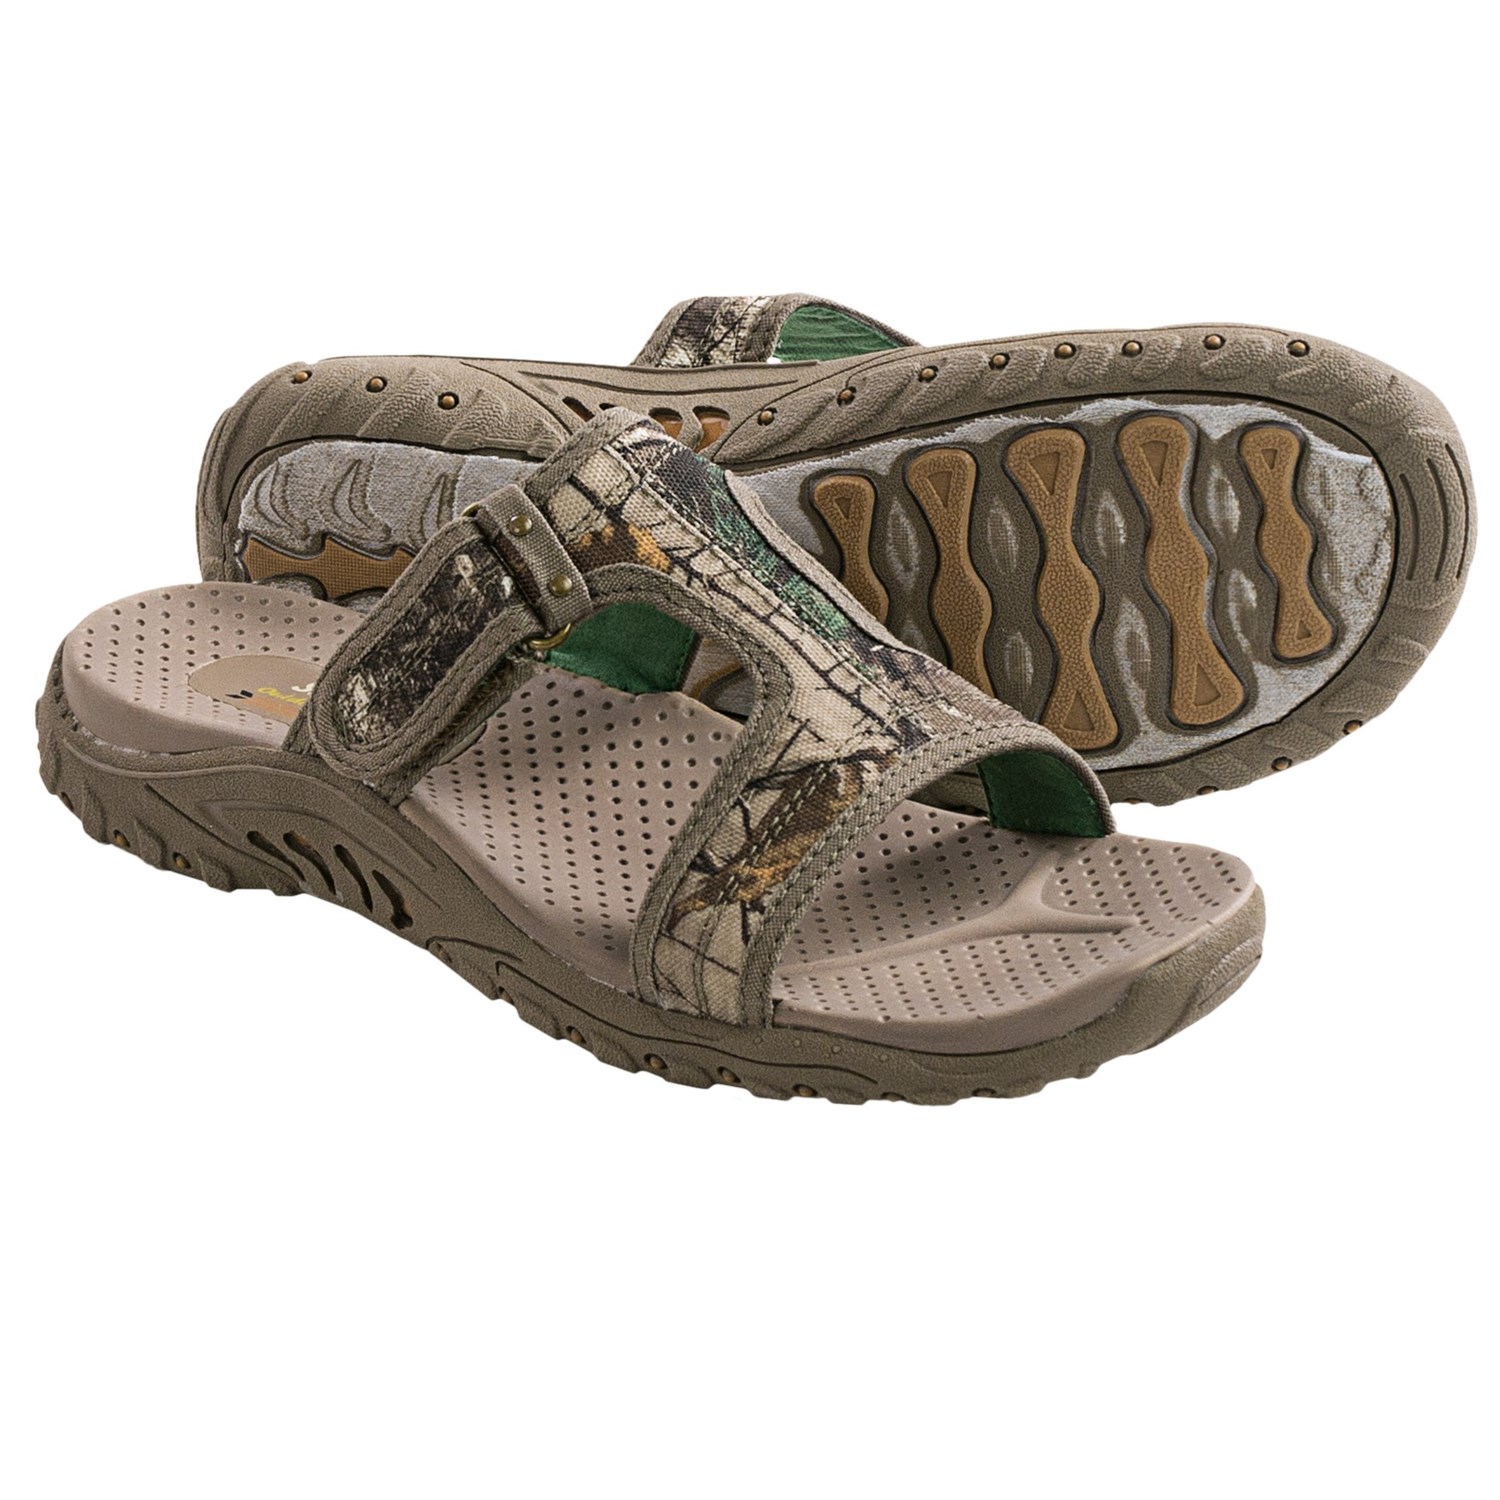 skechers women's outdoor lifestyle sandals